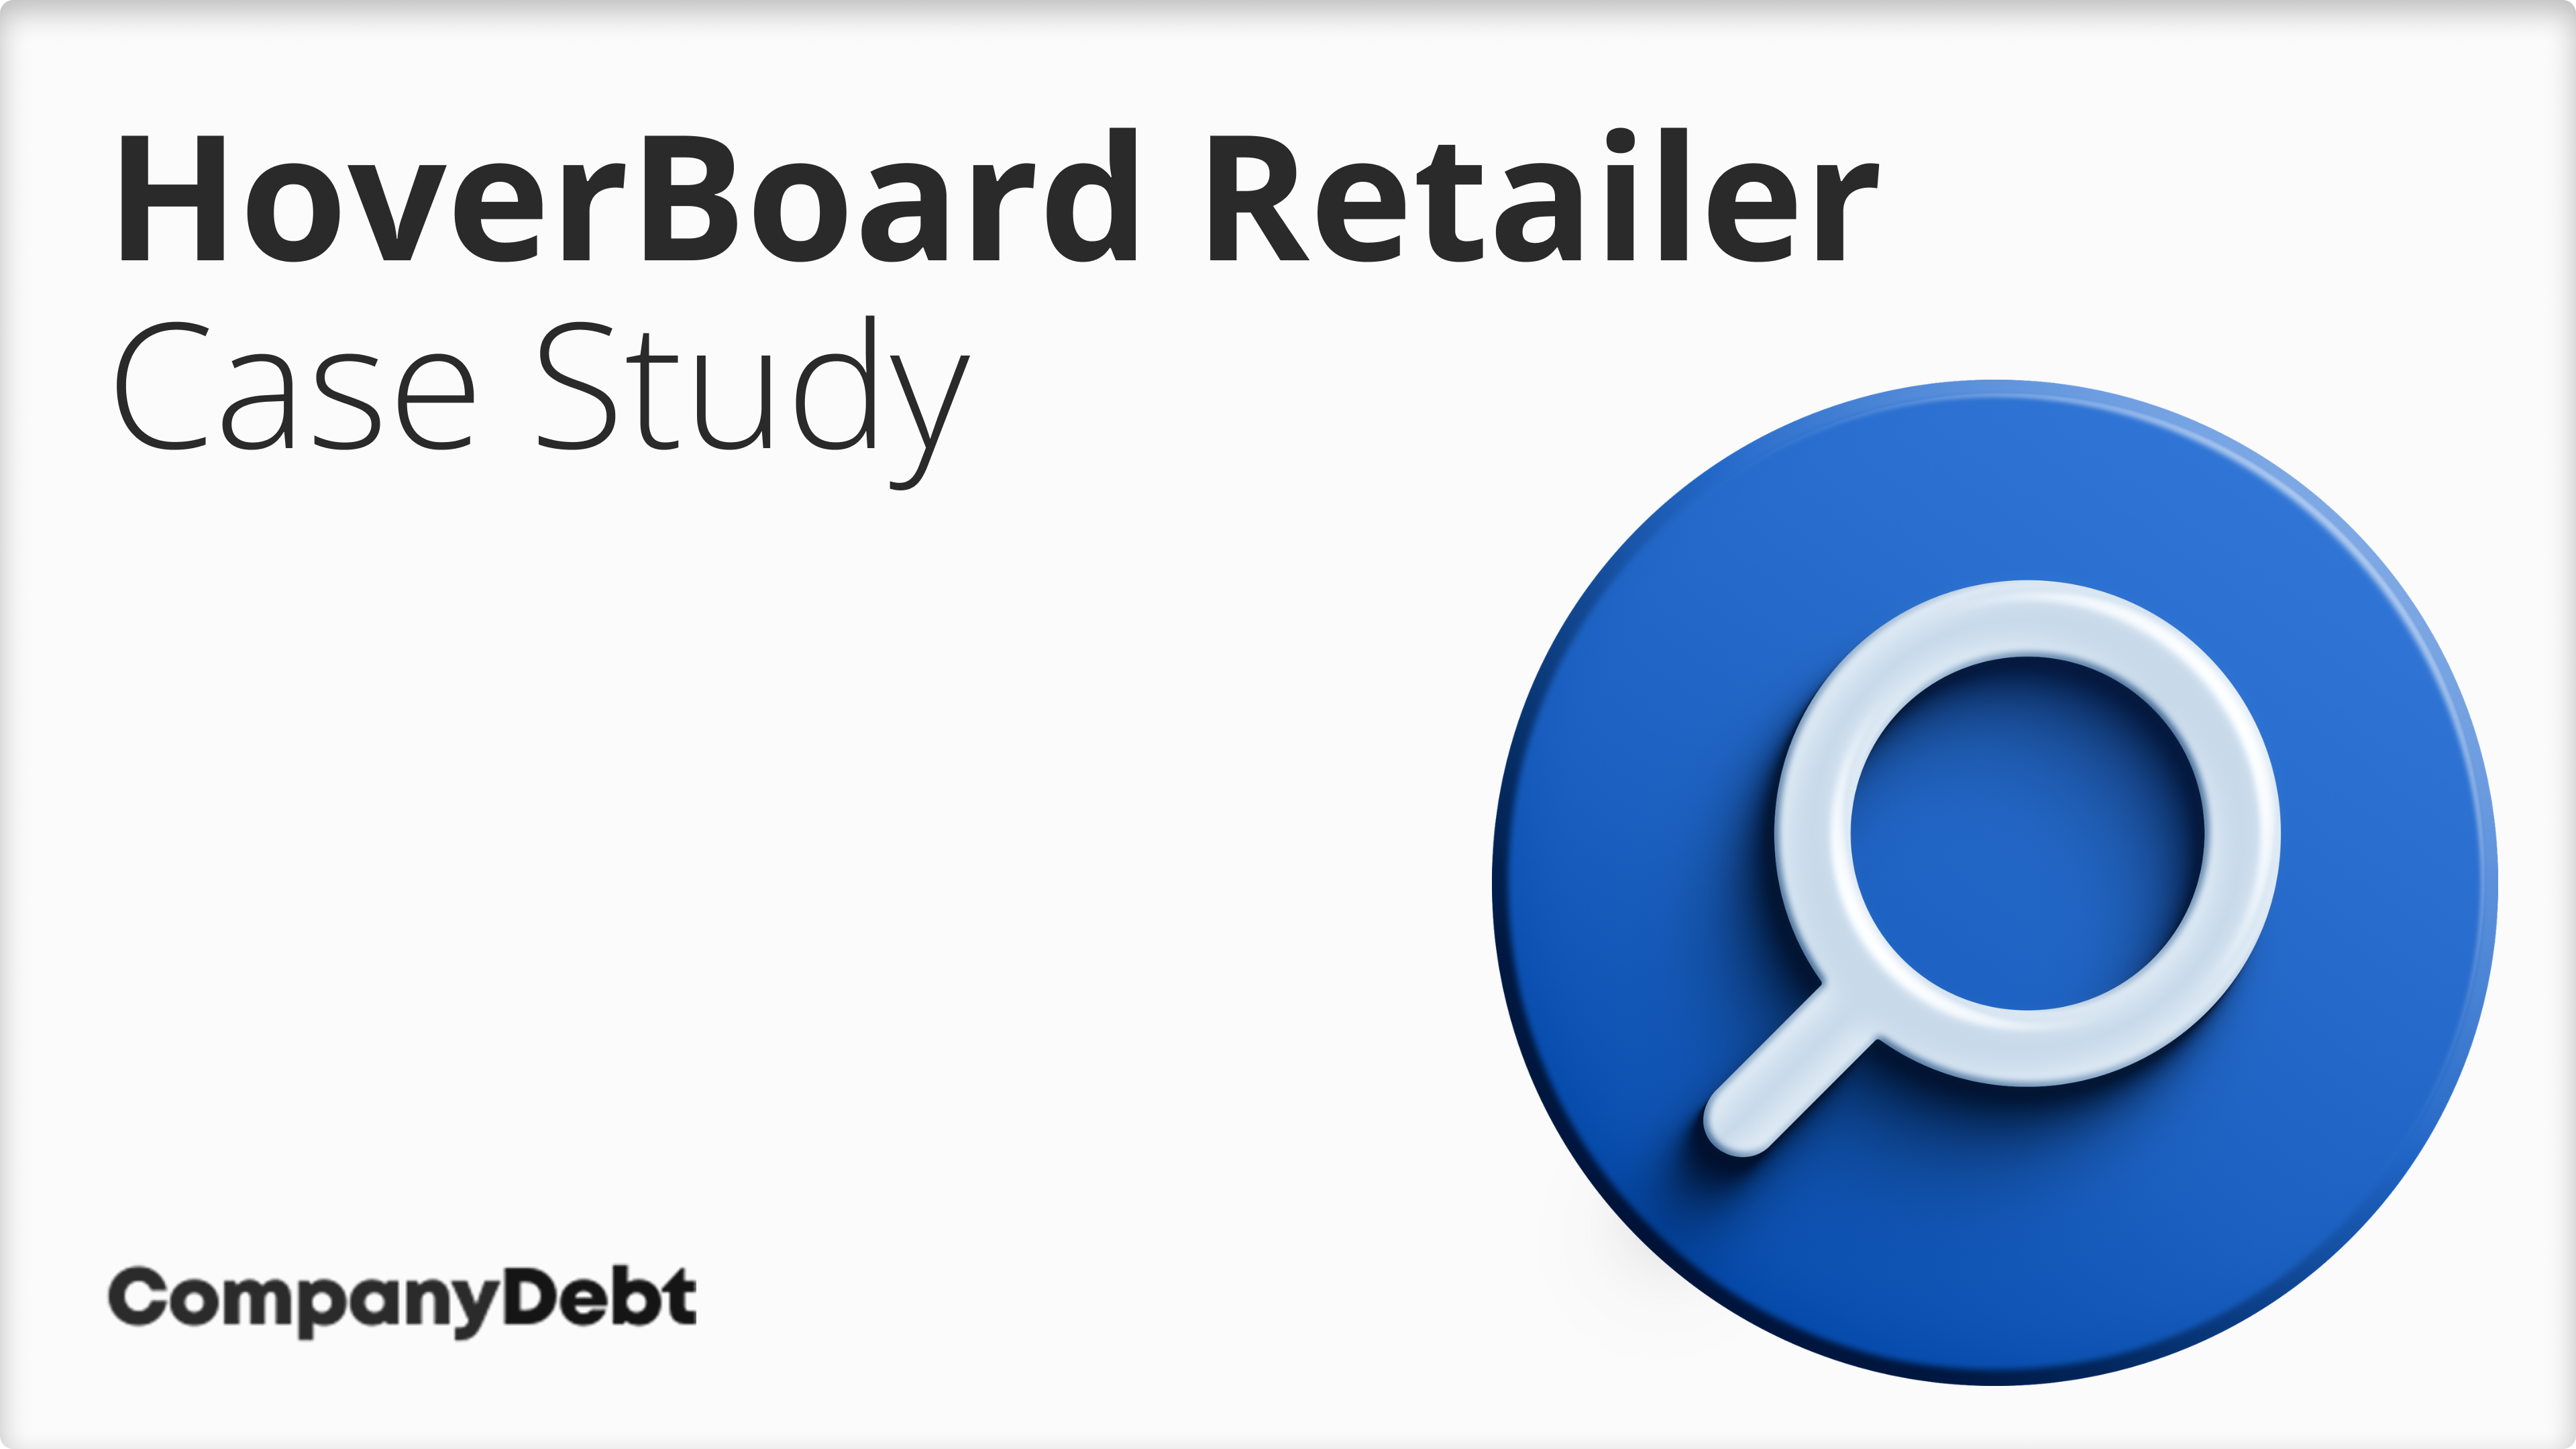 HoverBoard-Retailer-Case-Study